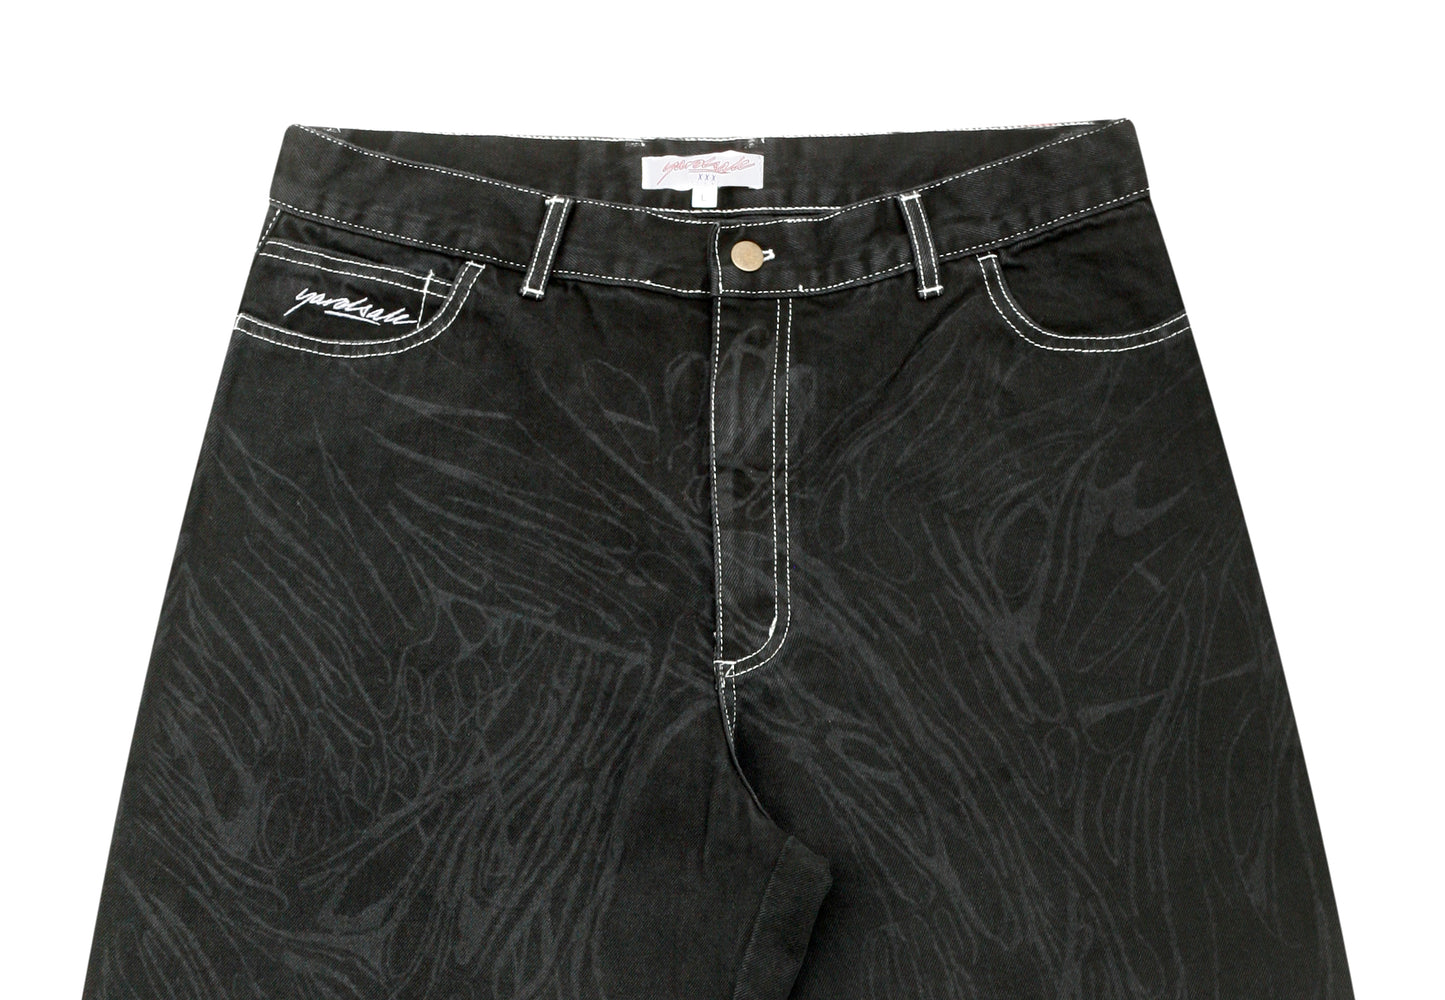 新入荷 ヤードセール yardsale jeans ripper black パンツ ...